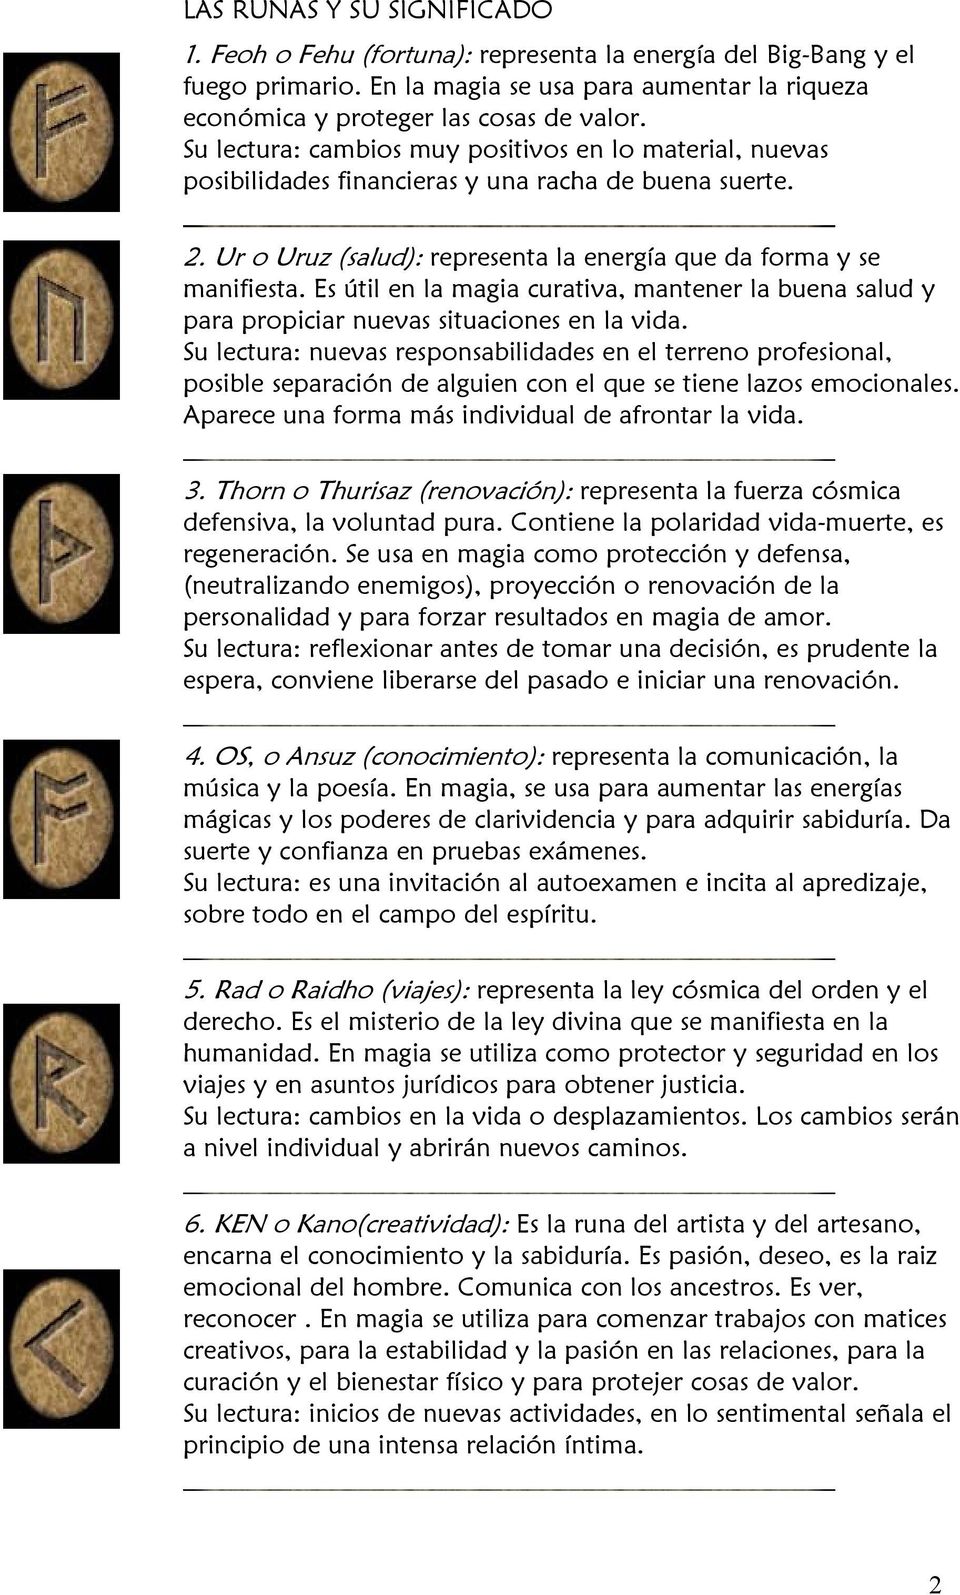 LAS RUNAS Y SU SIGNIFICADO - PDF Free Download